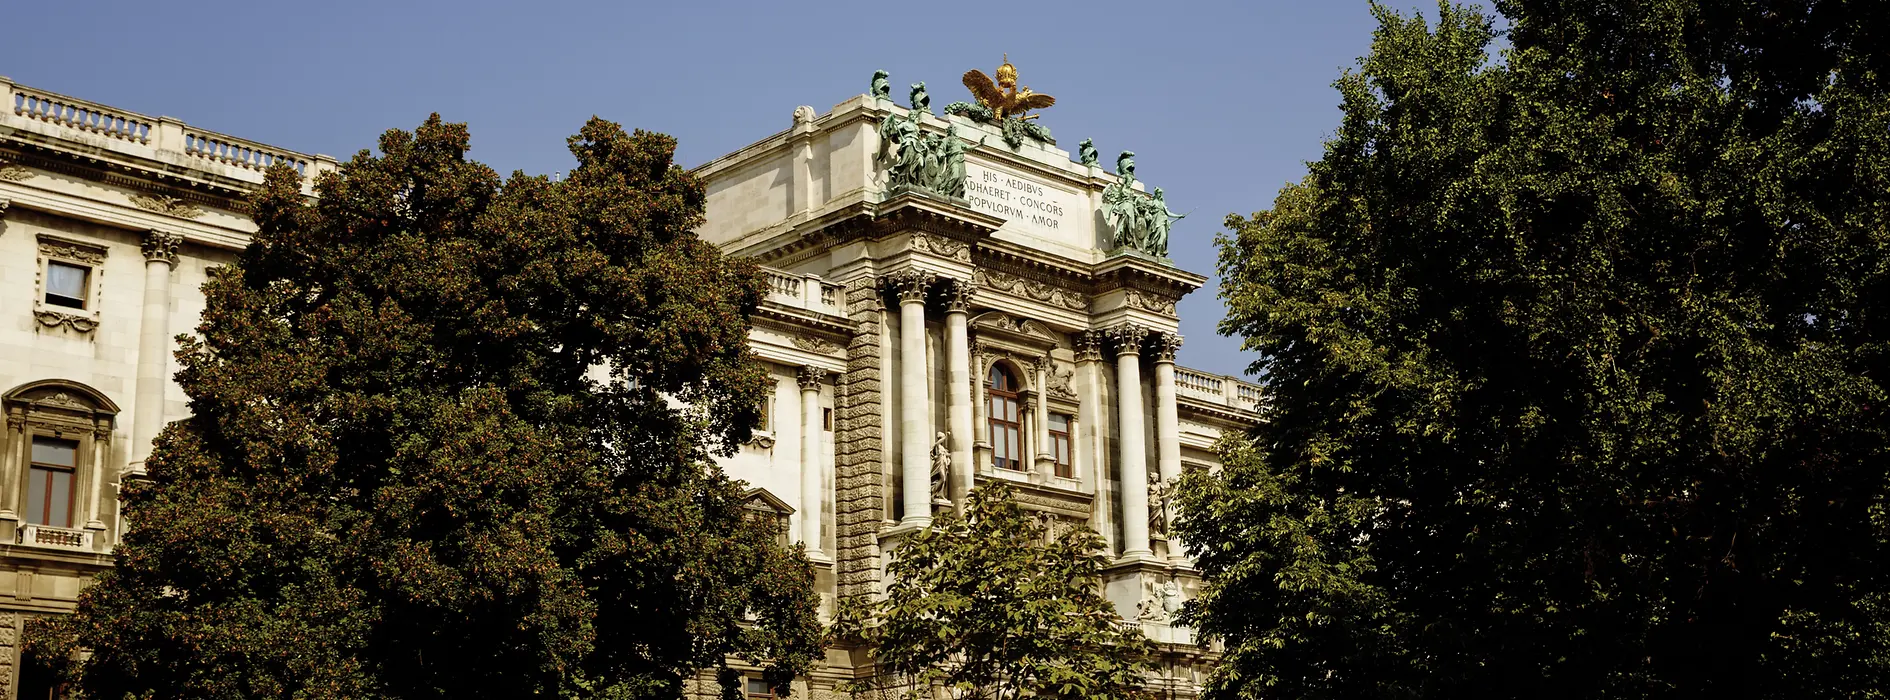 Palatul imperial Hofburg